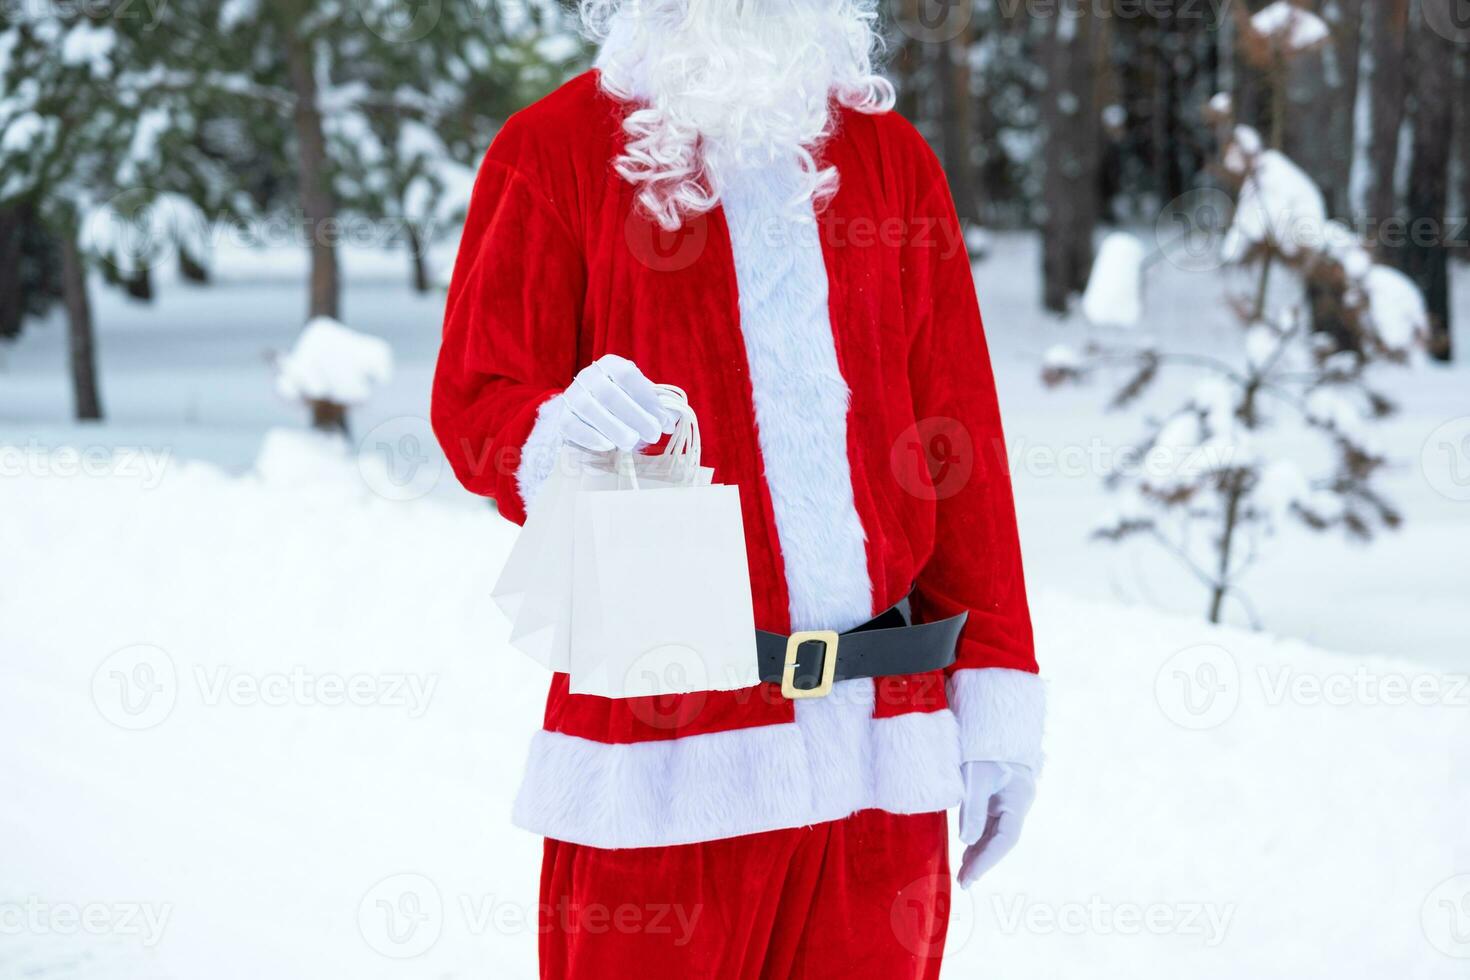 Santa Claus all'aperto nel inverno e neve passaggio nel mano carta borse con mestiere regalo, cibo consegna. acquisti, confezione raccolta differenziata, fatto a mano, consegna per Natale e nuovo anno foto